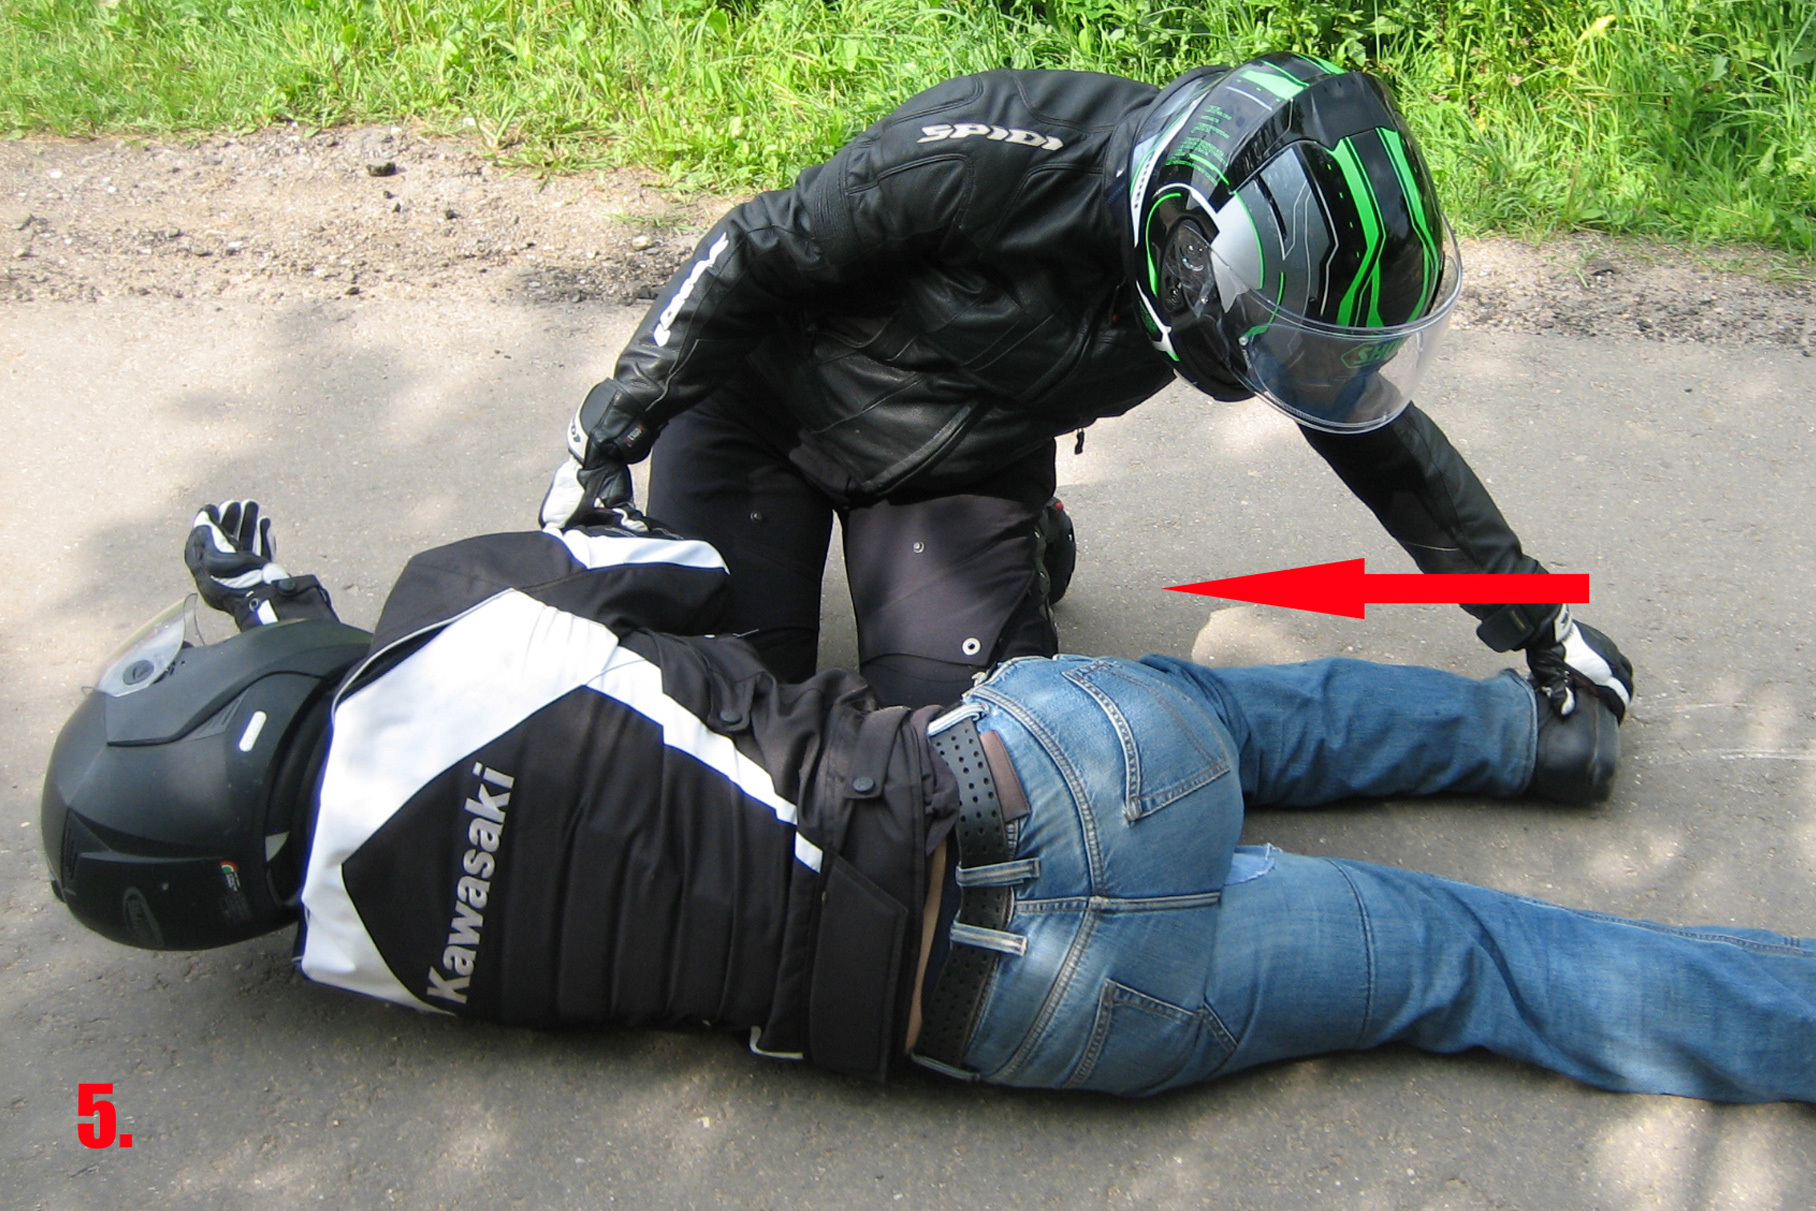 Первая помощь: если в аварию попал мотоциклист?